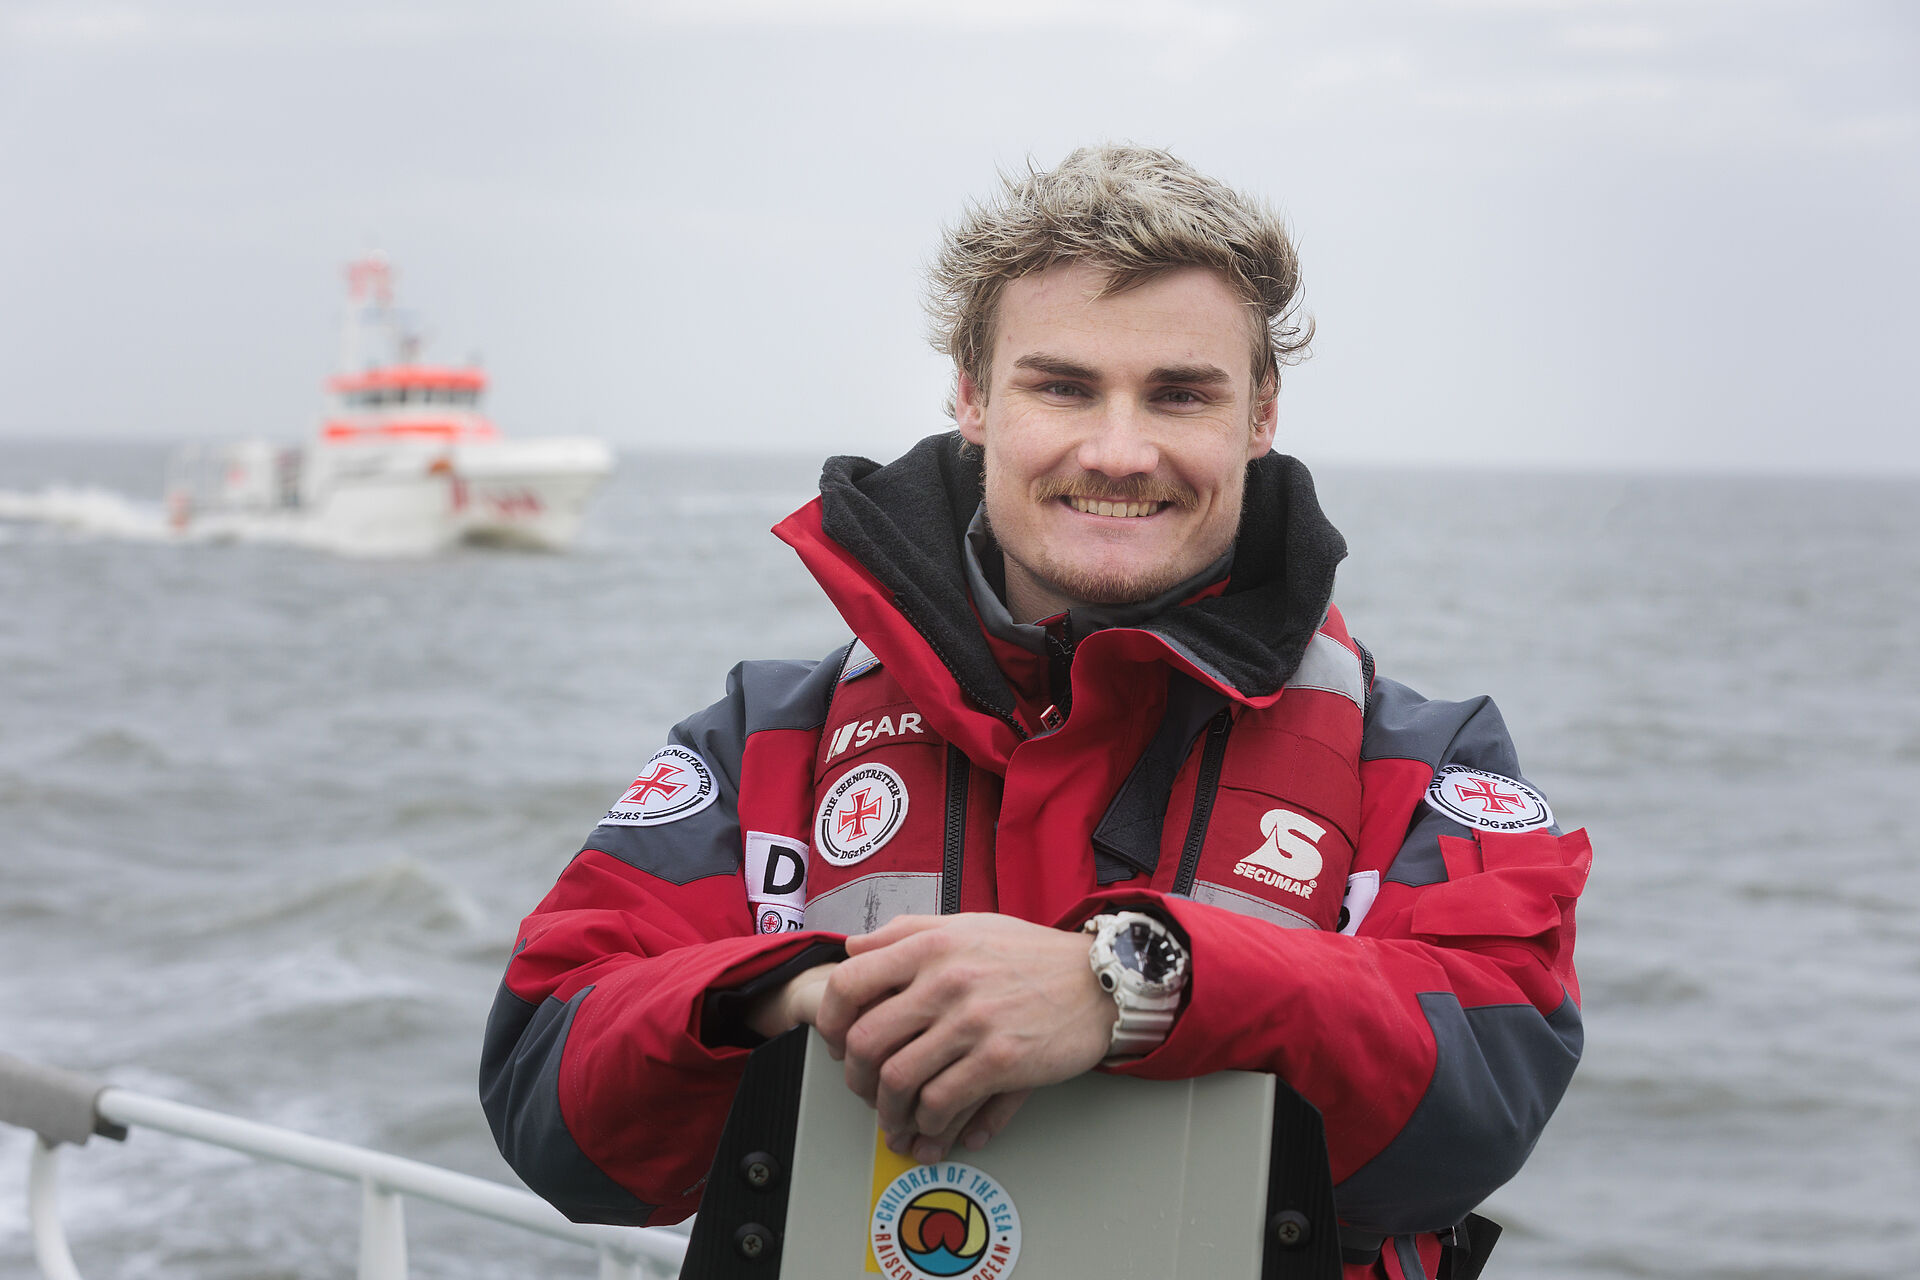 Kiteprofi Linus Erdmann steht mit seinem Board an der Reling eines Seenotrettungskreuzers, im Hintergrund ist der Seenotrettungskreuzer ANNELIESE KRAMER in Fahrt zu sehen.